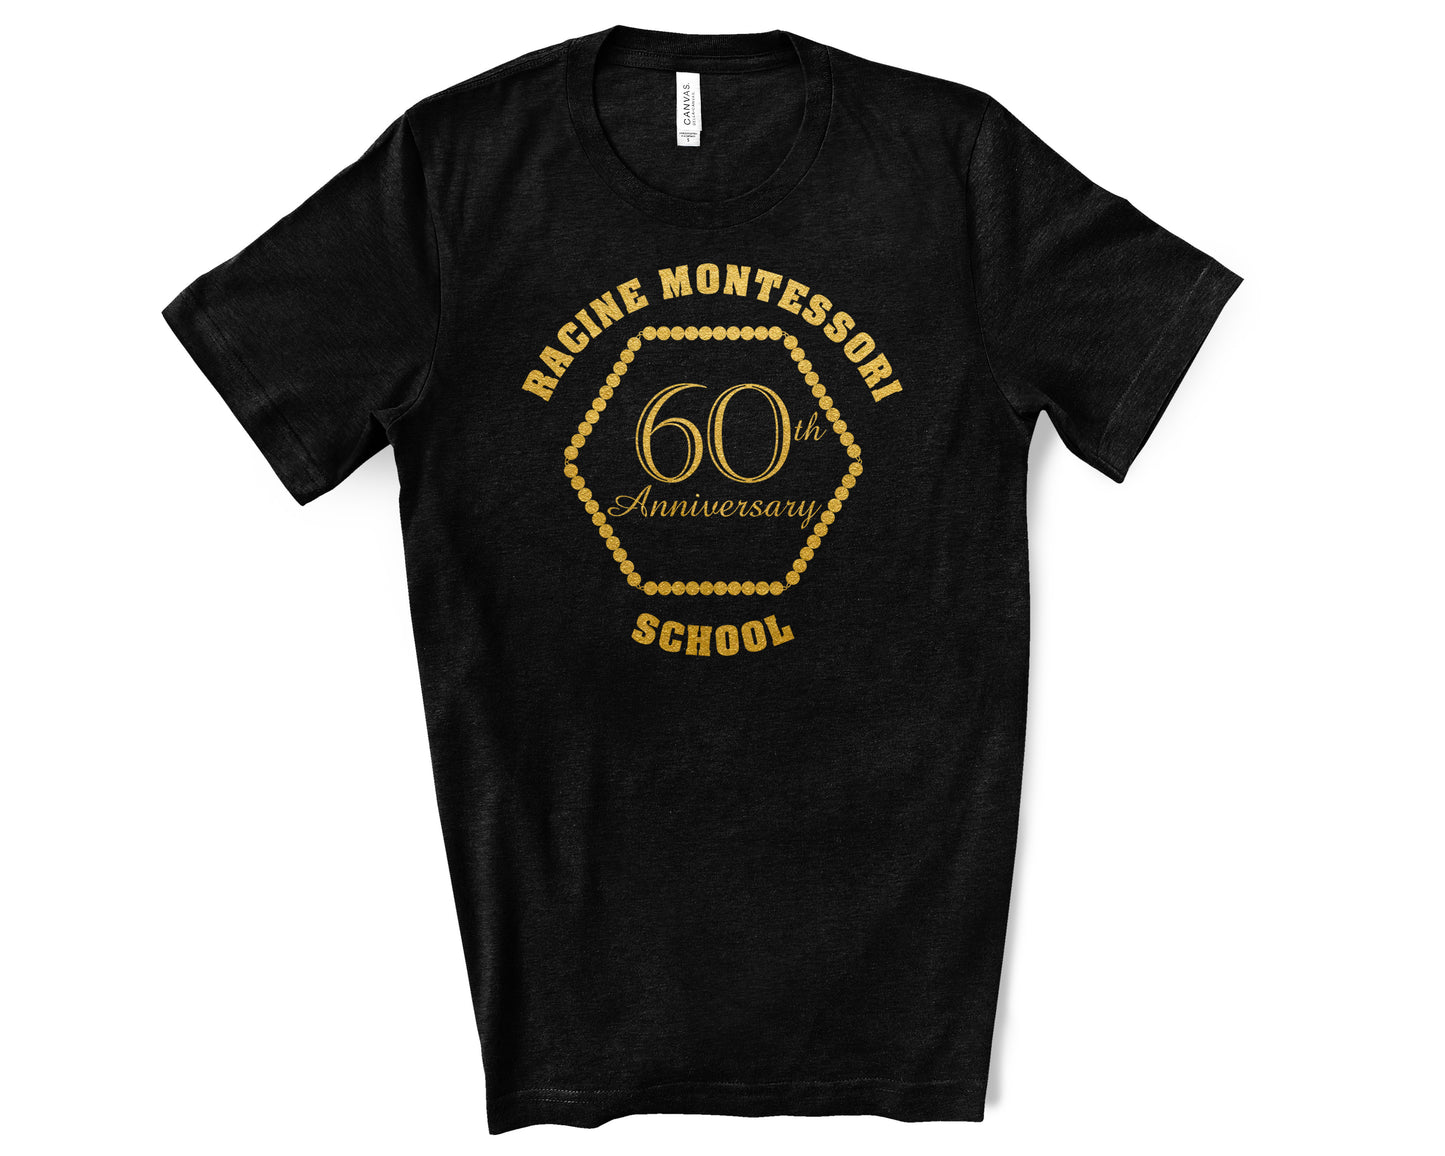 Racine Montessori 60th Anniversary T-shirt